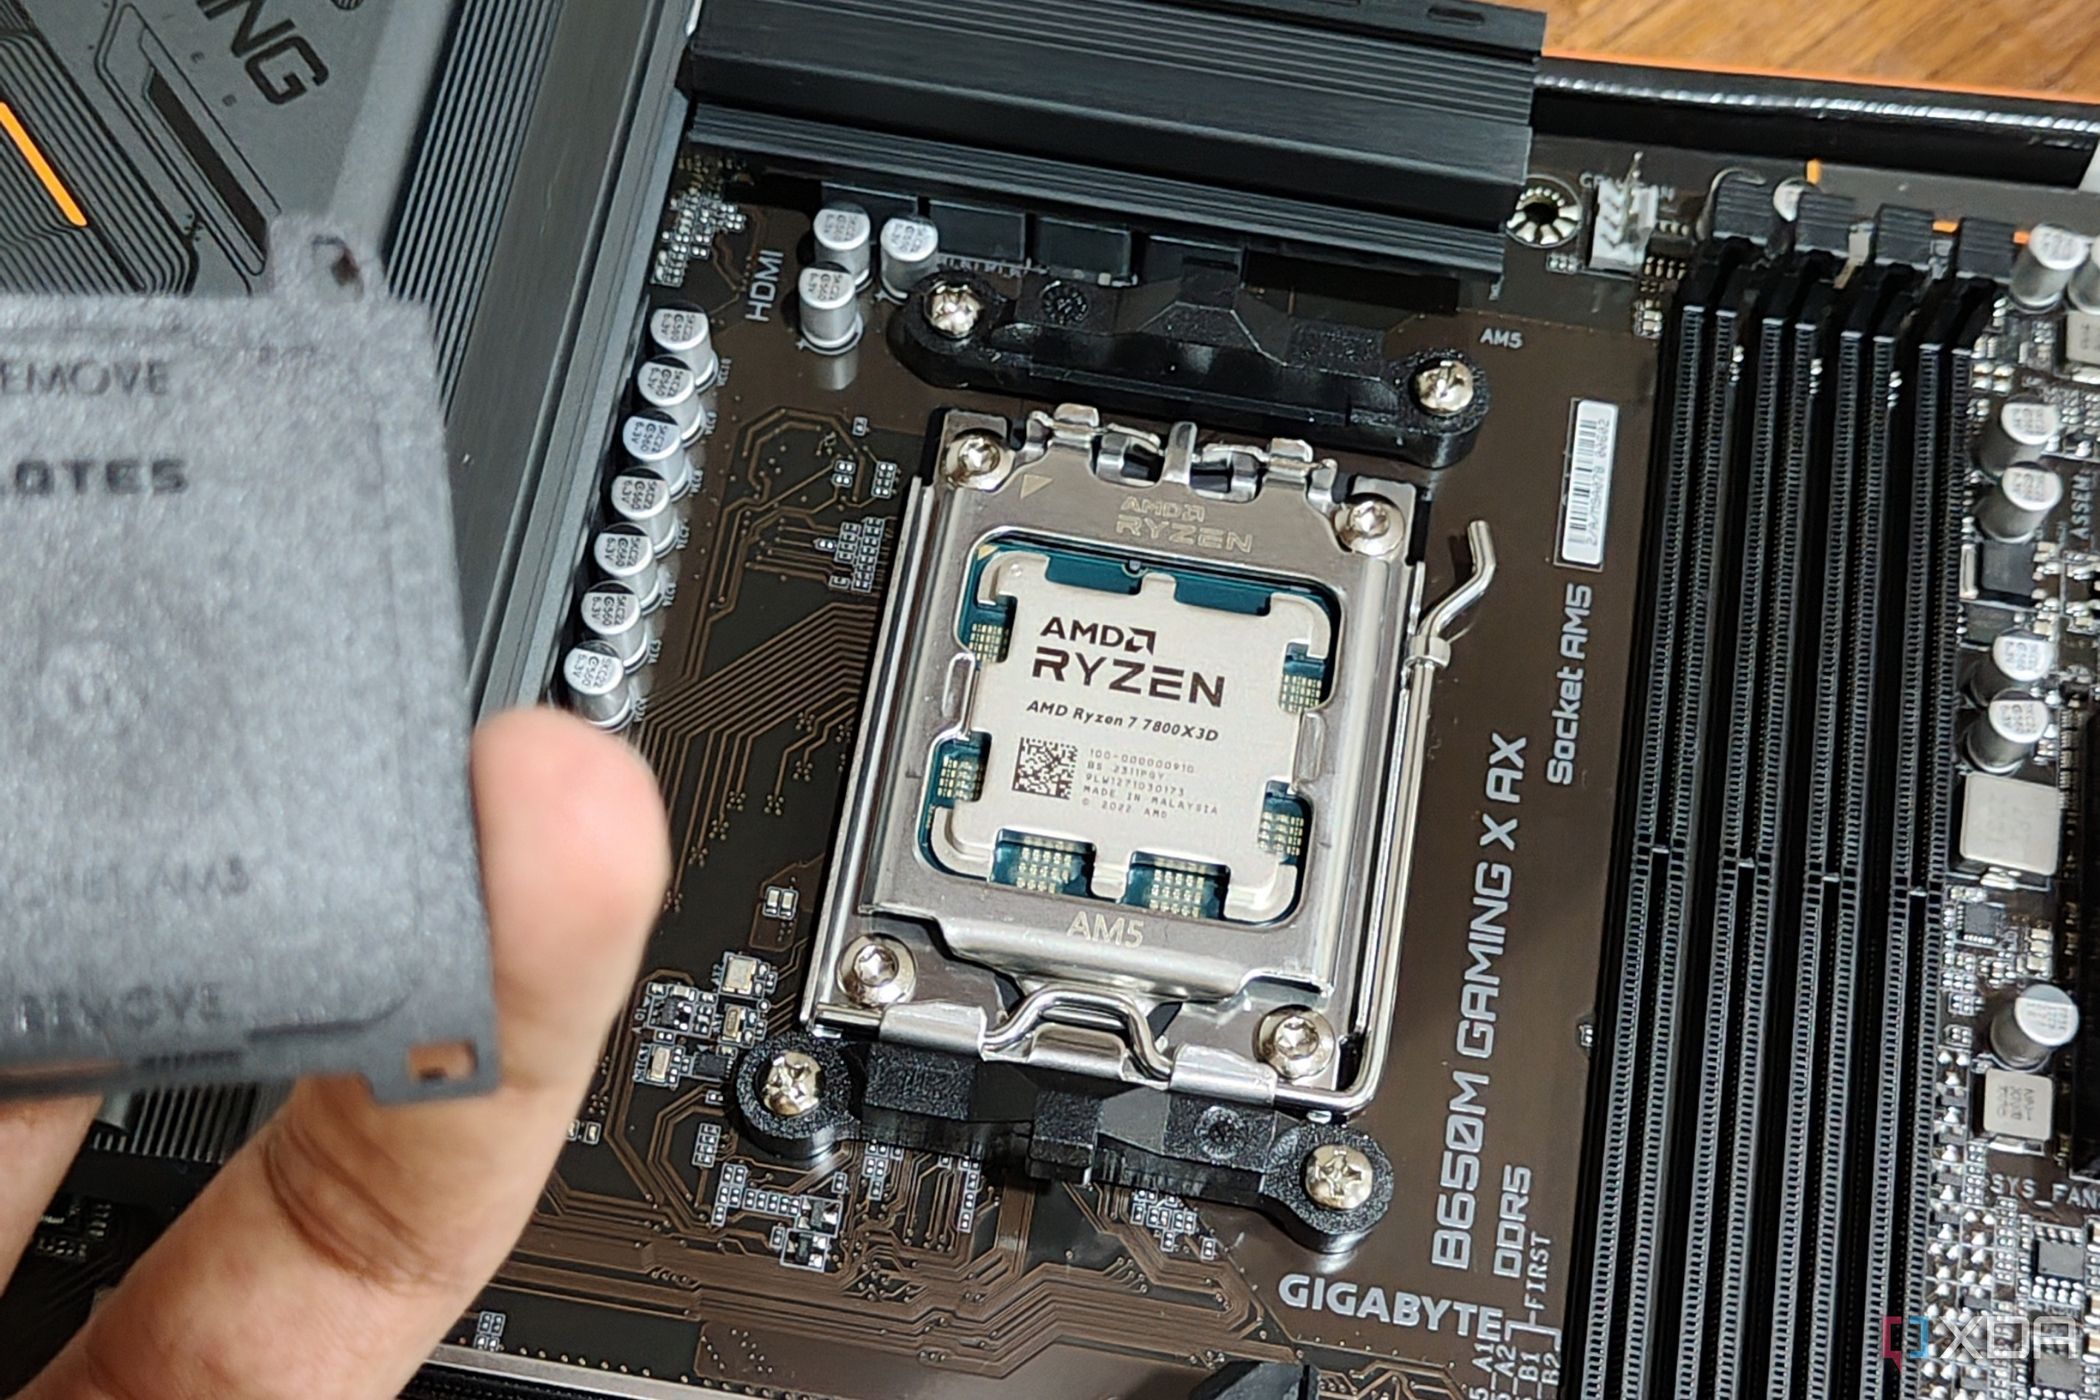 Изображение процессора AMD Ryzen 7 7800X3D, установленного на материнской плате, с человеком на переднем плане, держащим в руке крышку разъема.